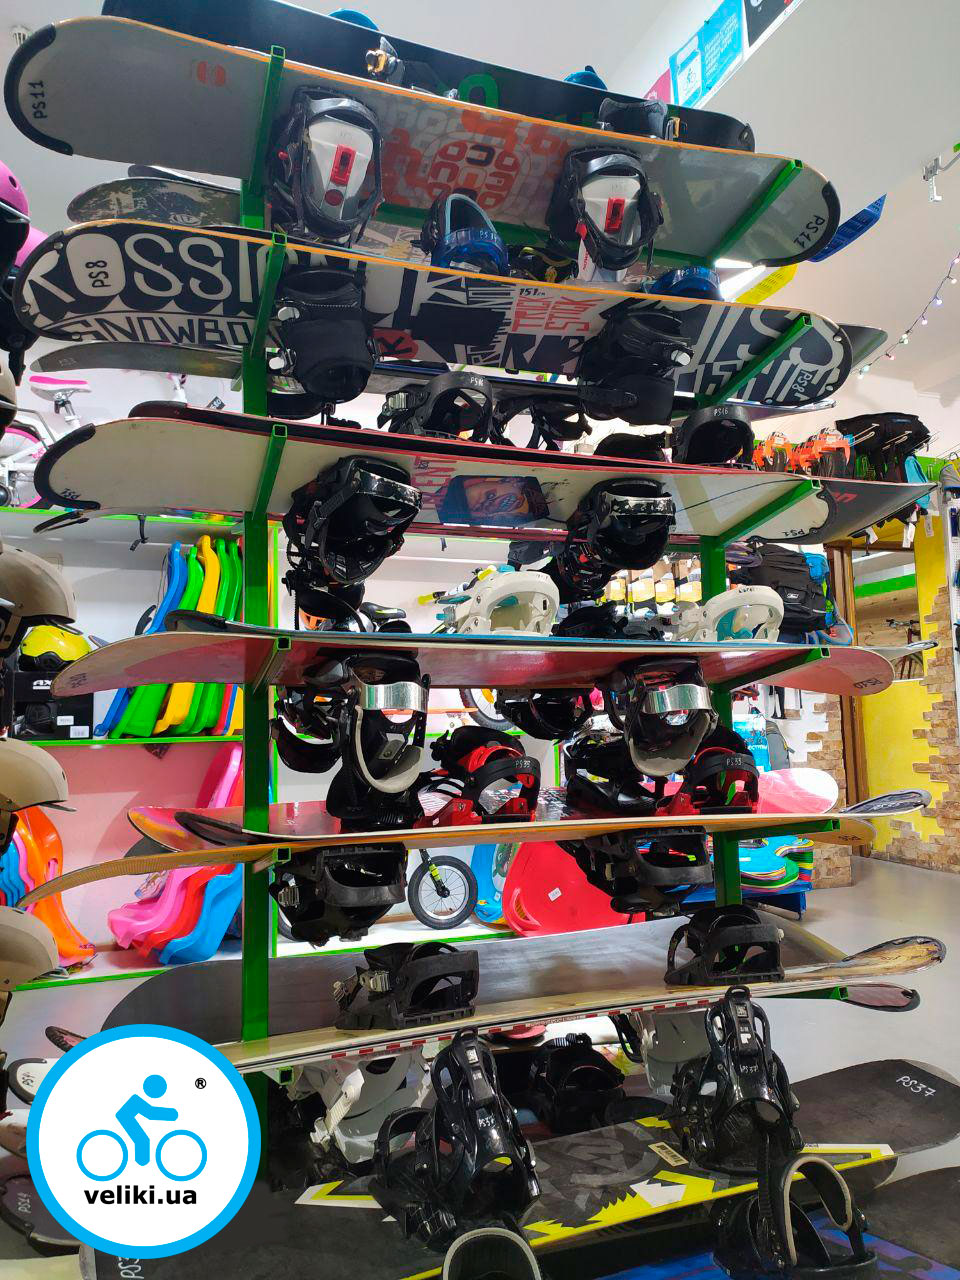 podbor snowboard 6